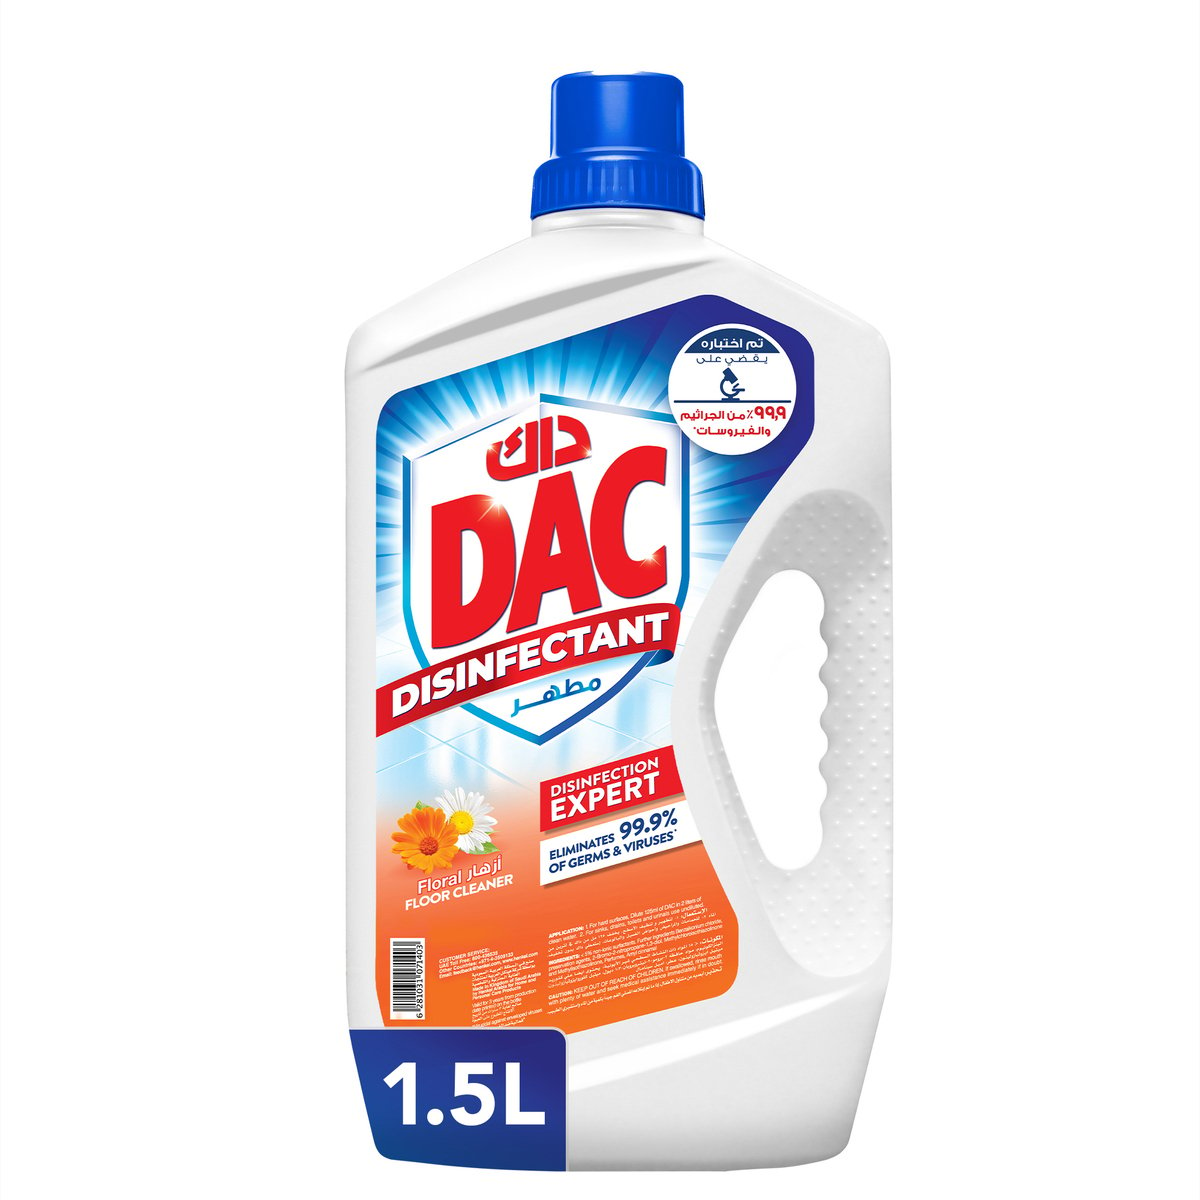 Dac Disinfectant Floral 1.5Litre